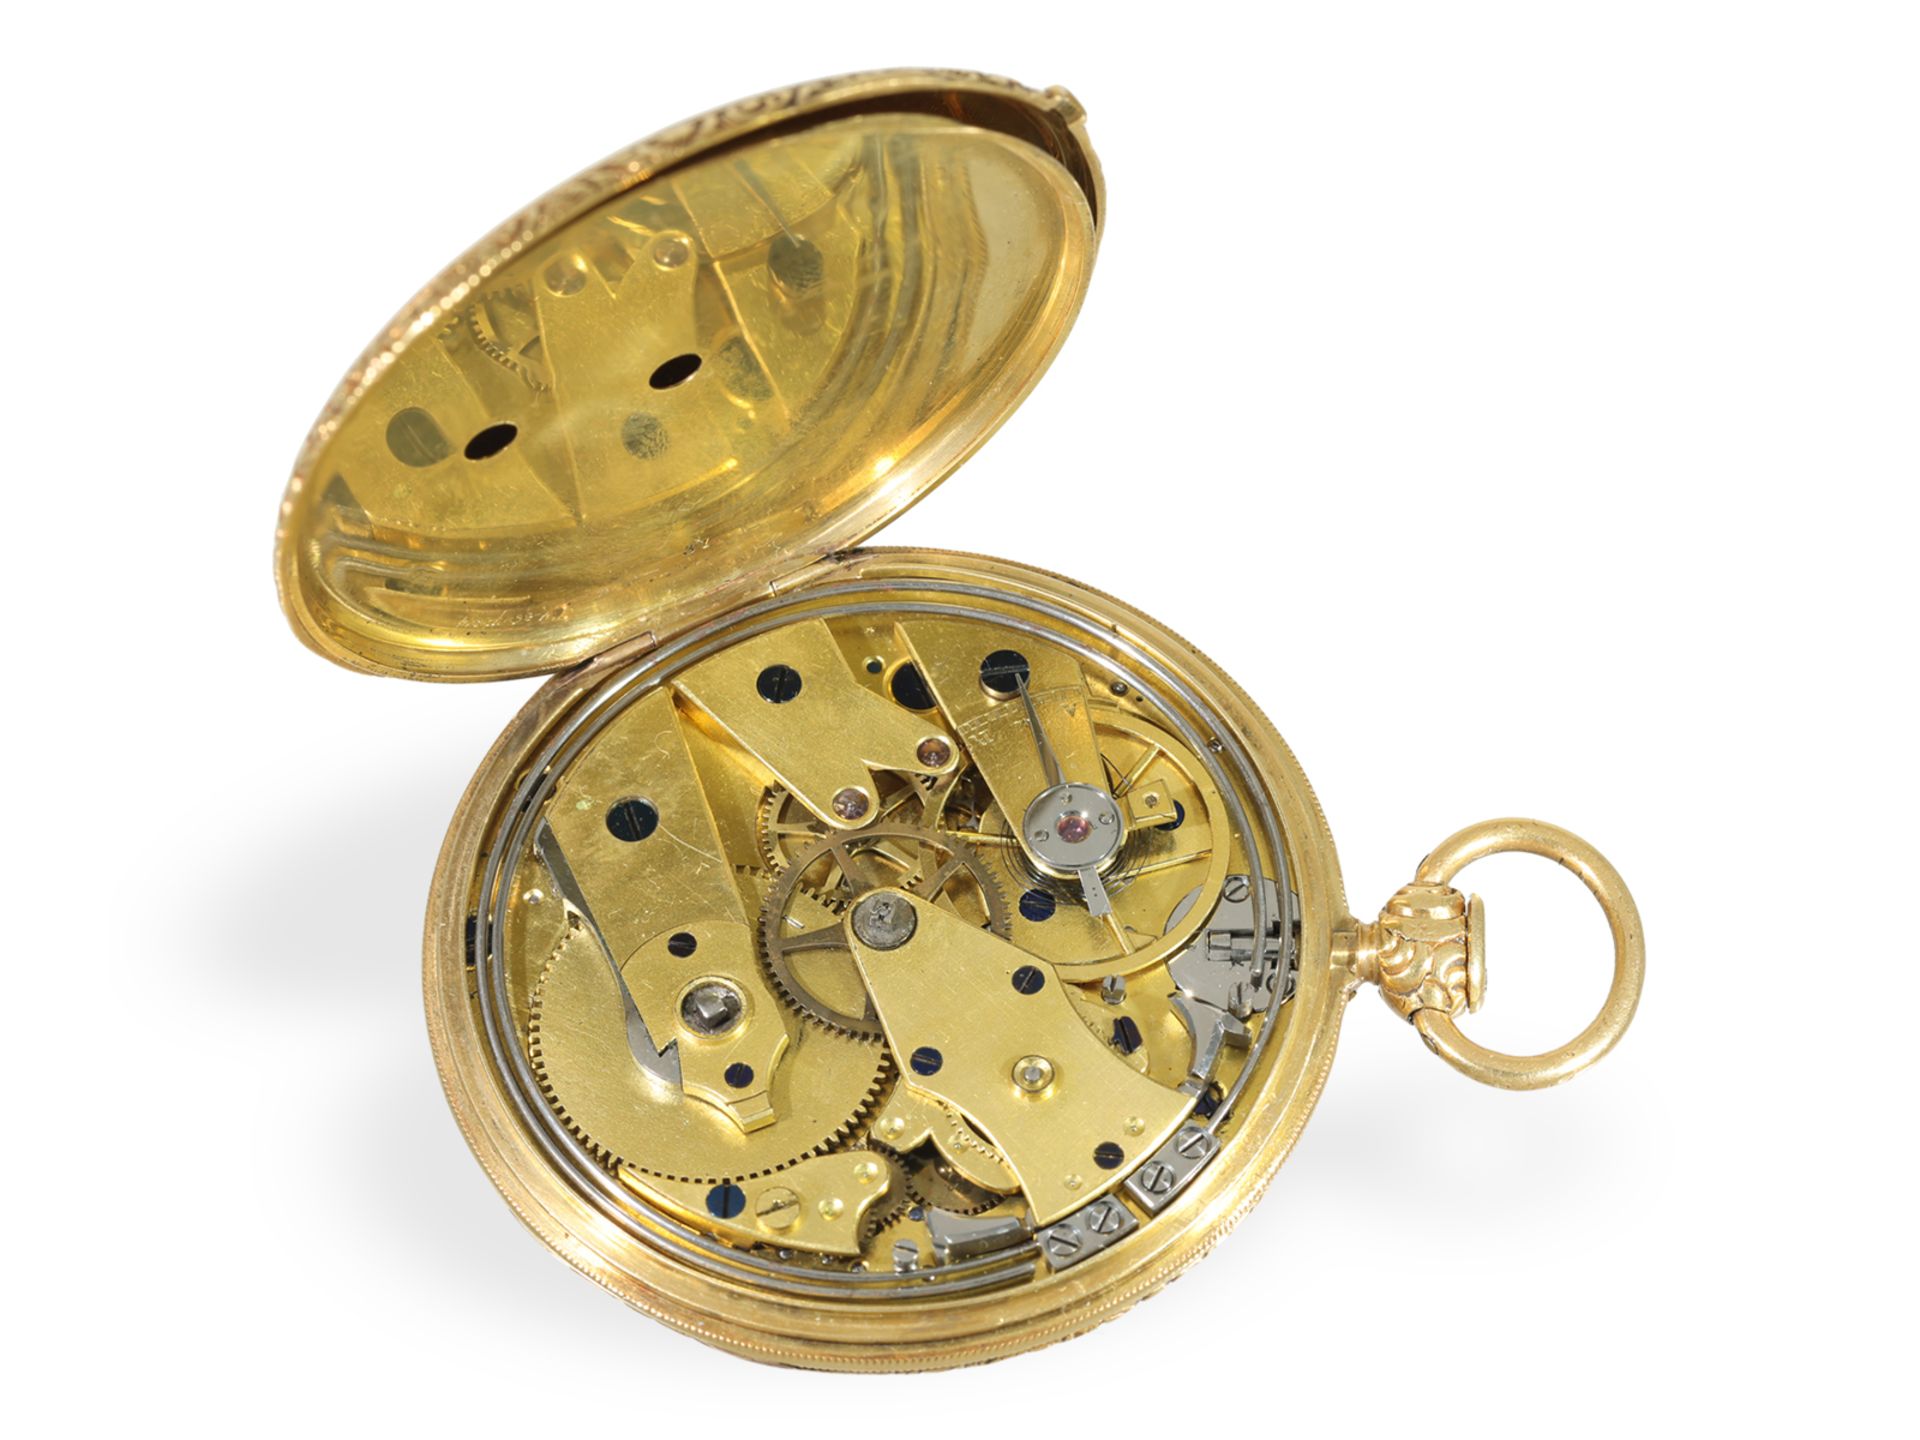 Taschenuhr: prächtige Lepine mit Repetition und goldenem Ratschenschlüssel, ca. 1830 - Bild 4 aus 5